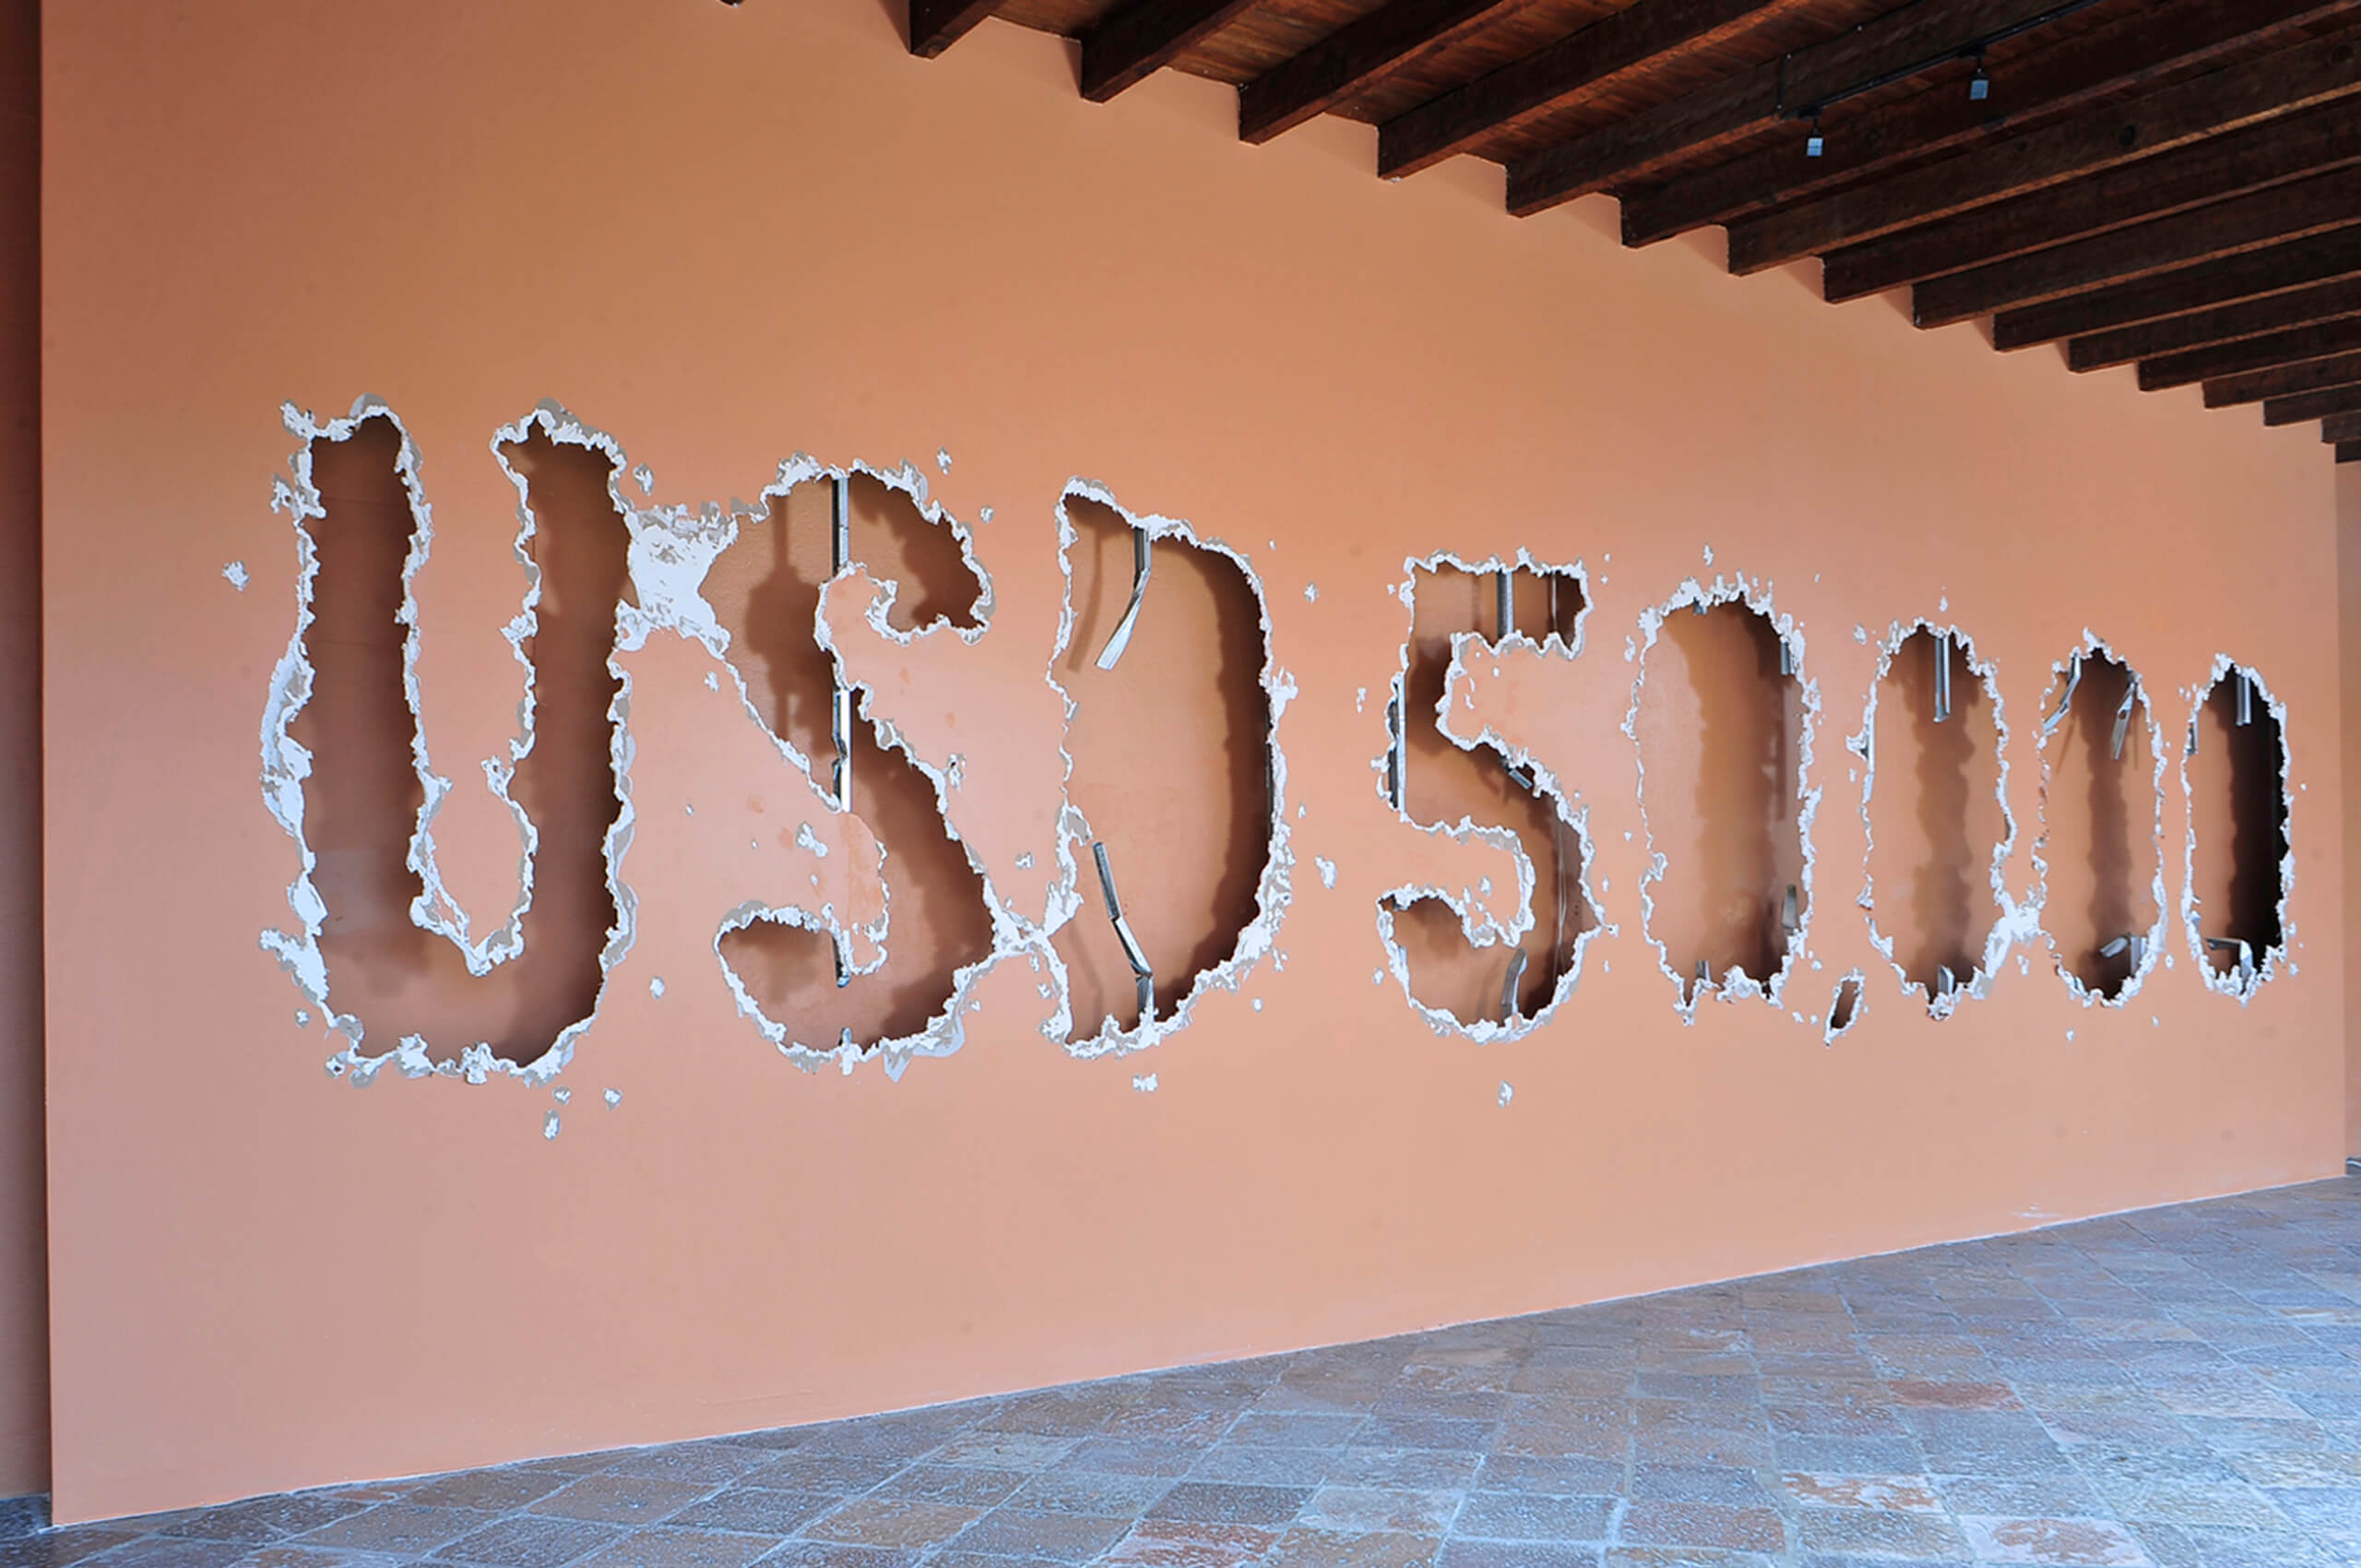 No hay artista joven que resista un cañonazo de 50,000 dólares | Resisting the present. México 2000-2012 | Museo Amparo, Puebla